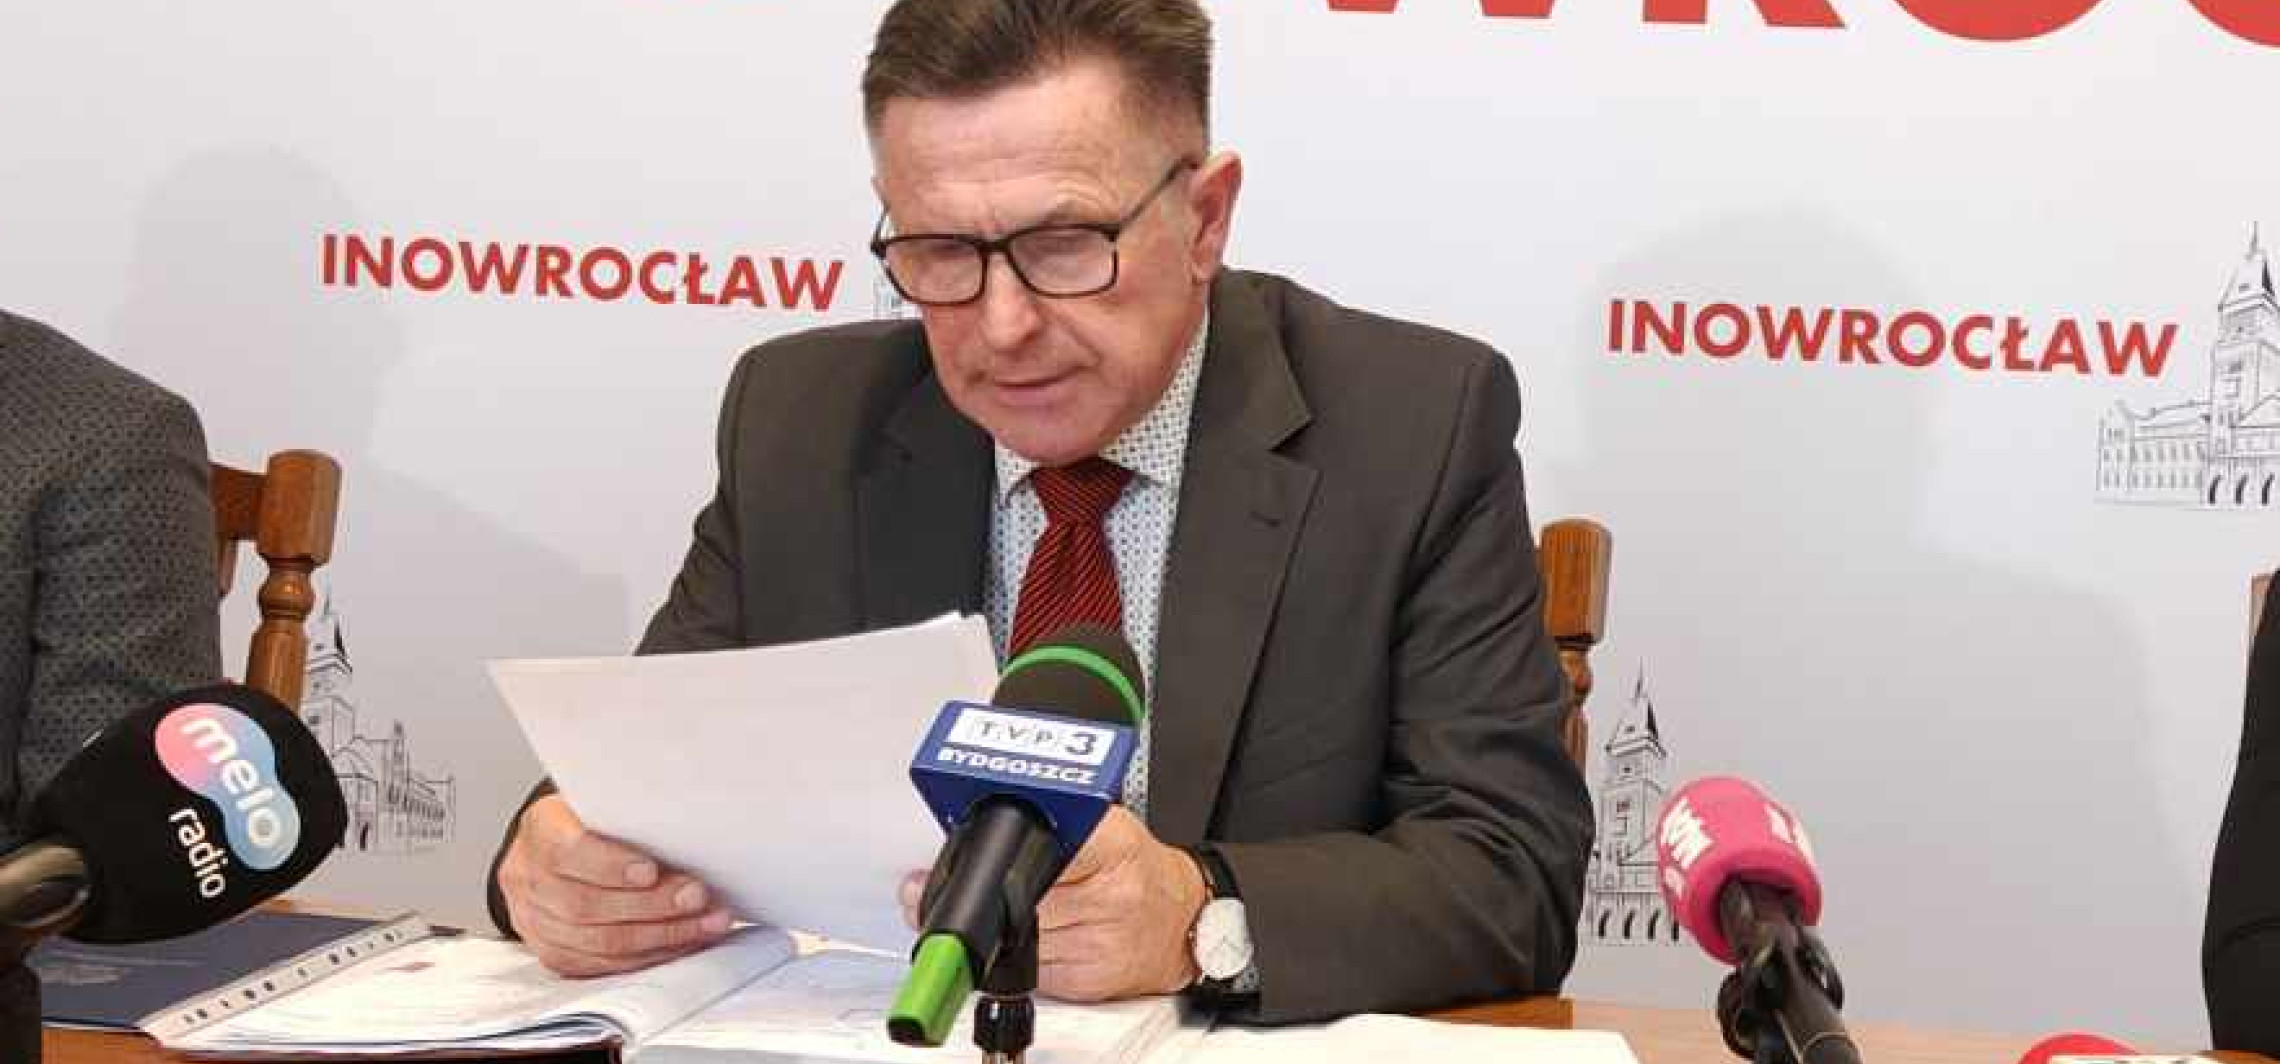 Inowrocław - M. Słabiński wydał oświadczenie ws. Ewy Koman